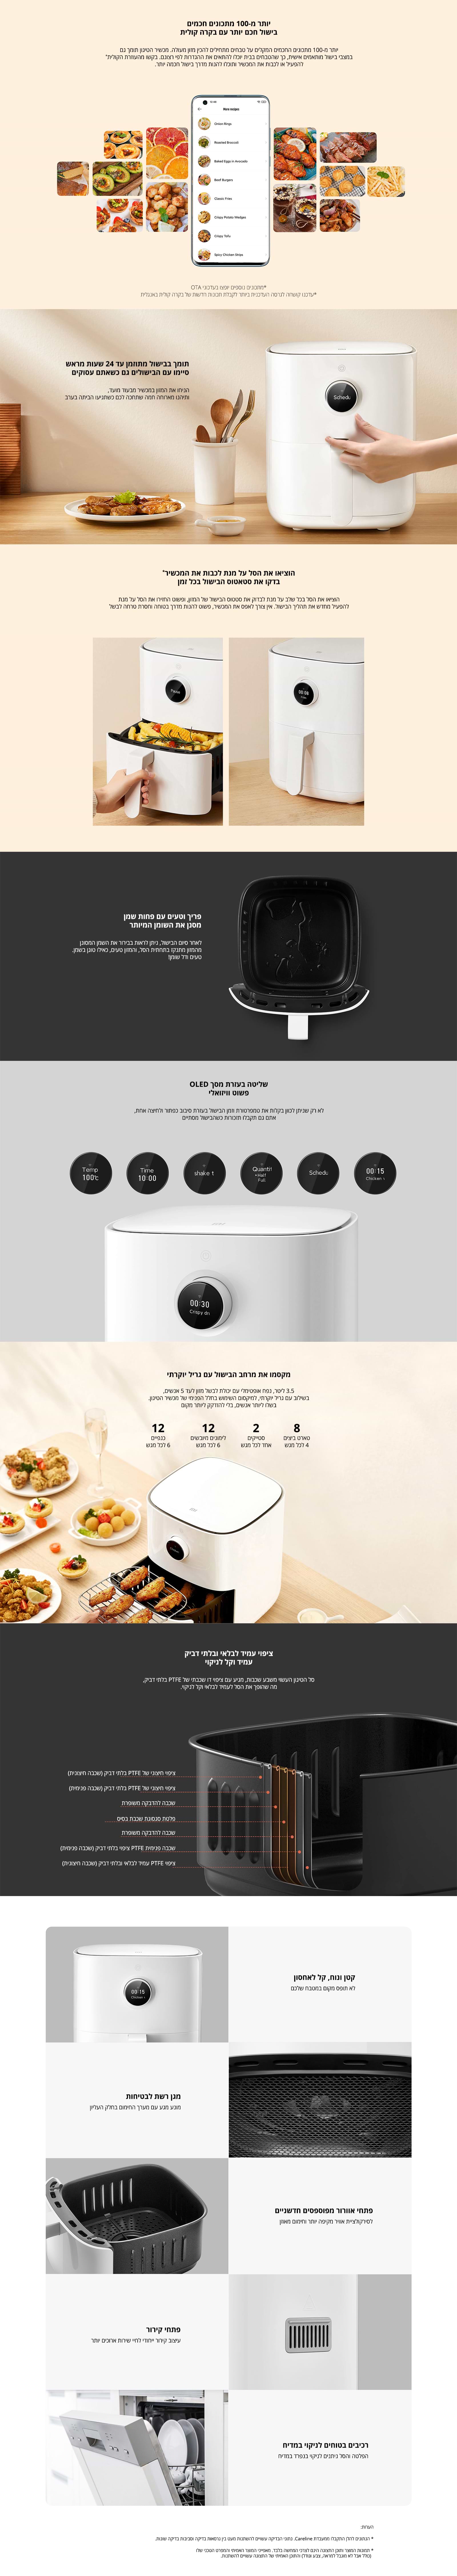 סיר טיגון באוויר חם חכם 3.5 ליטר Xiaomi Mi Smart Air Fryer 3.5L - שנה אחריות ע"י היבואן הרשמי 